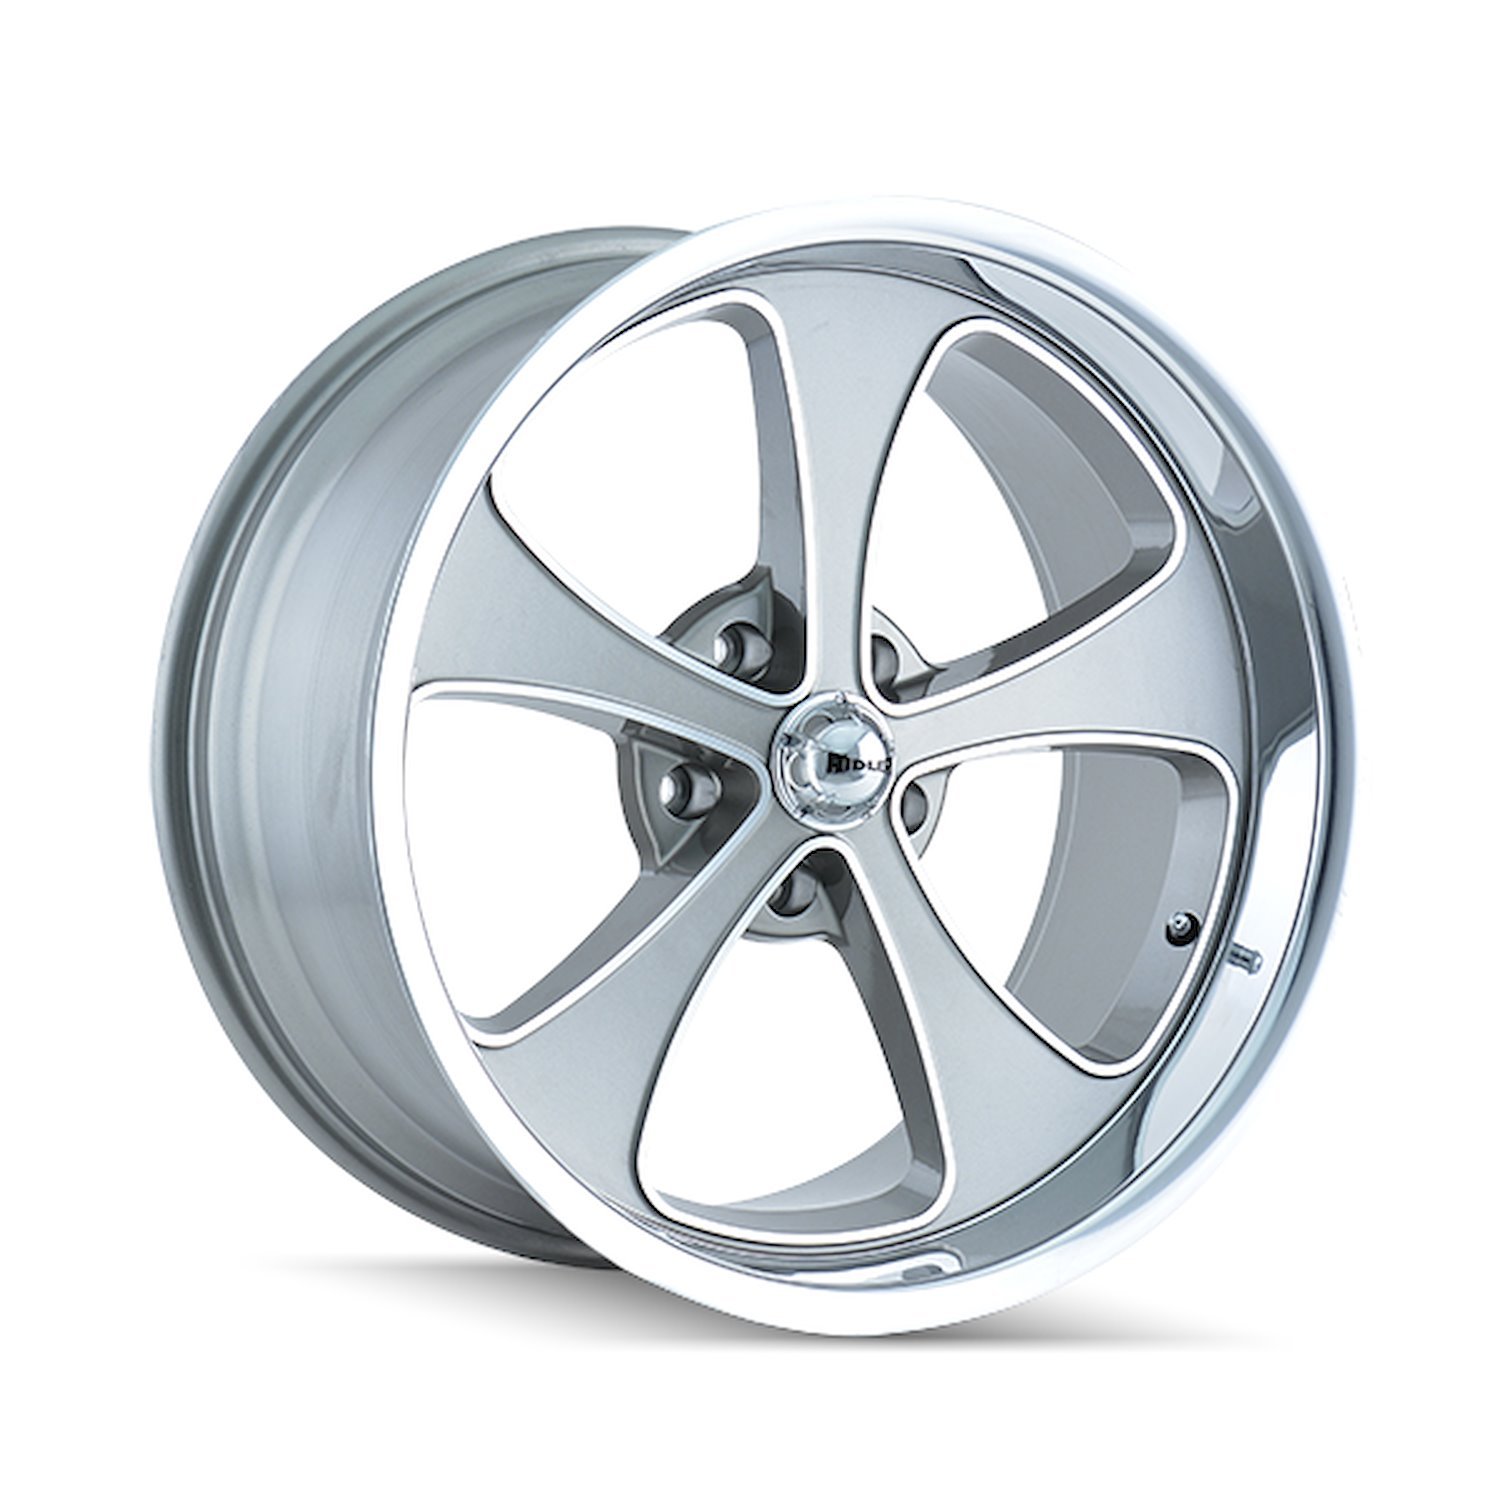 645-7861GP 645-Series Wheel [Size: 17" x 8"] Gloss Grey Machined/Polished Finish